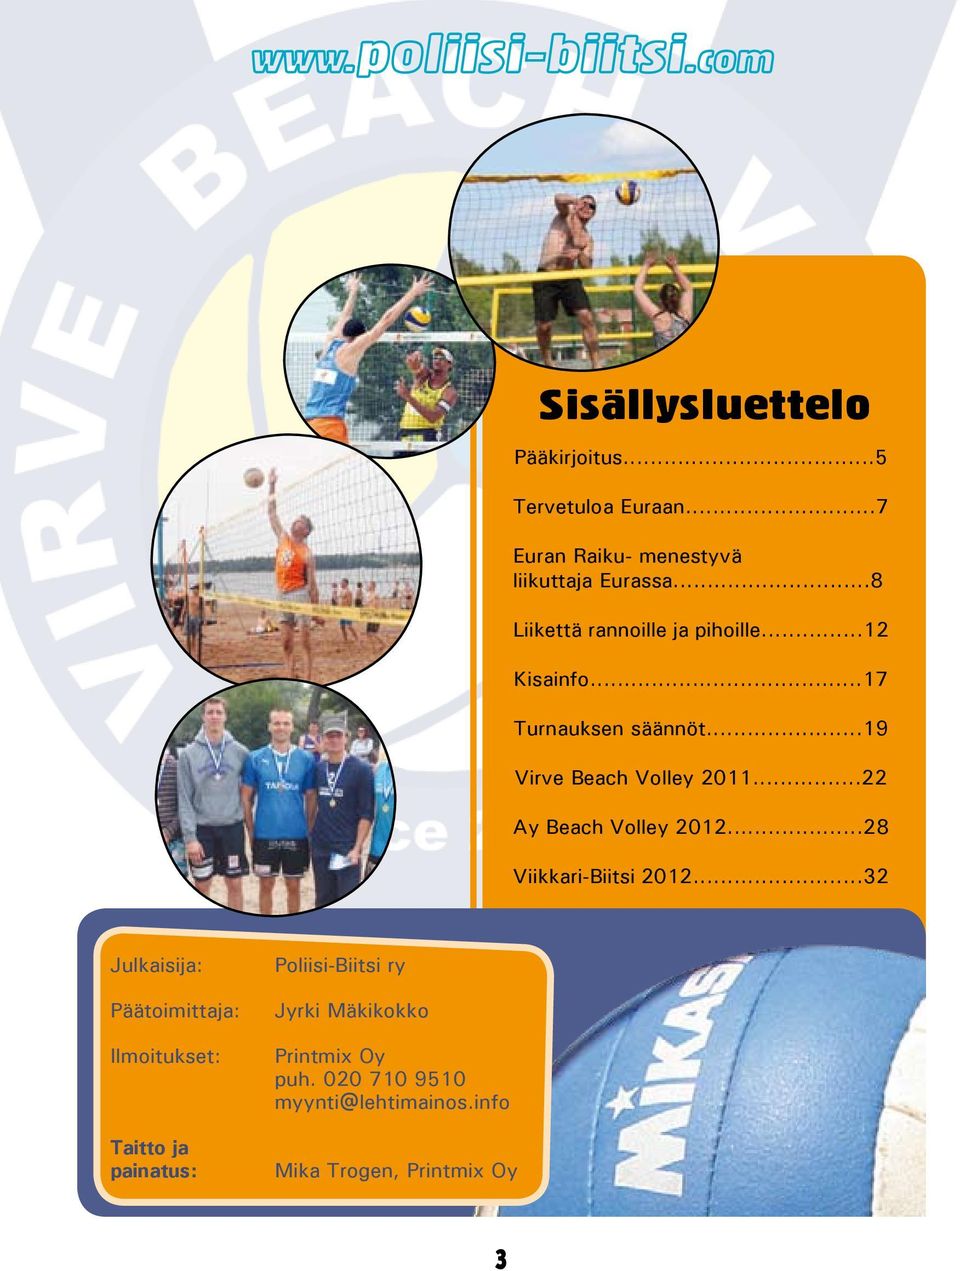 ..22 Ay Beach Volley 2012...28 Viikkari-Biitsi 2012.